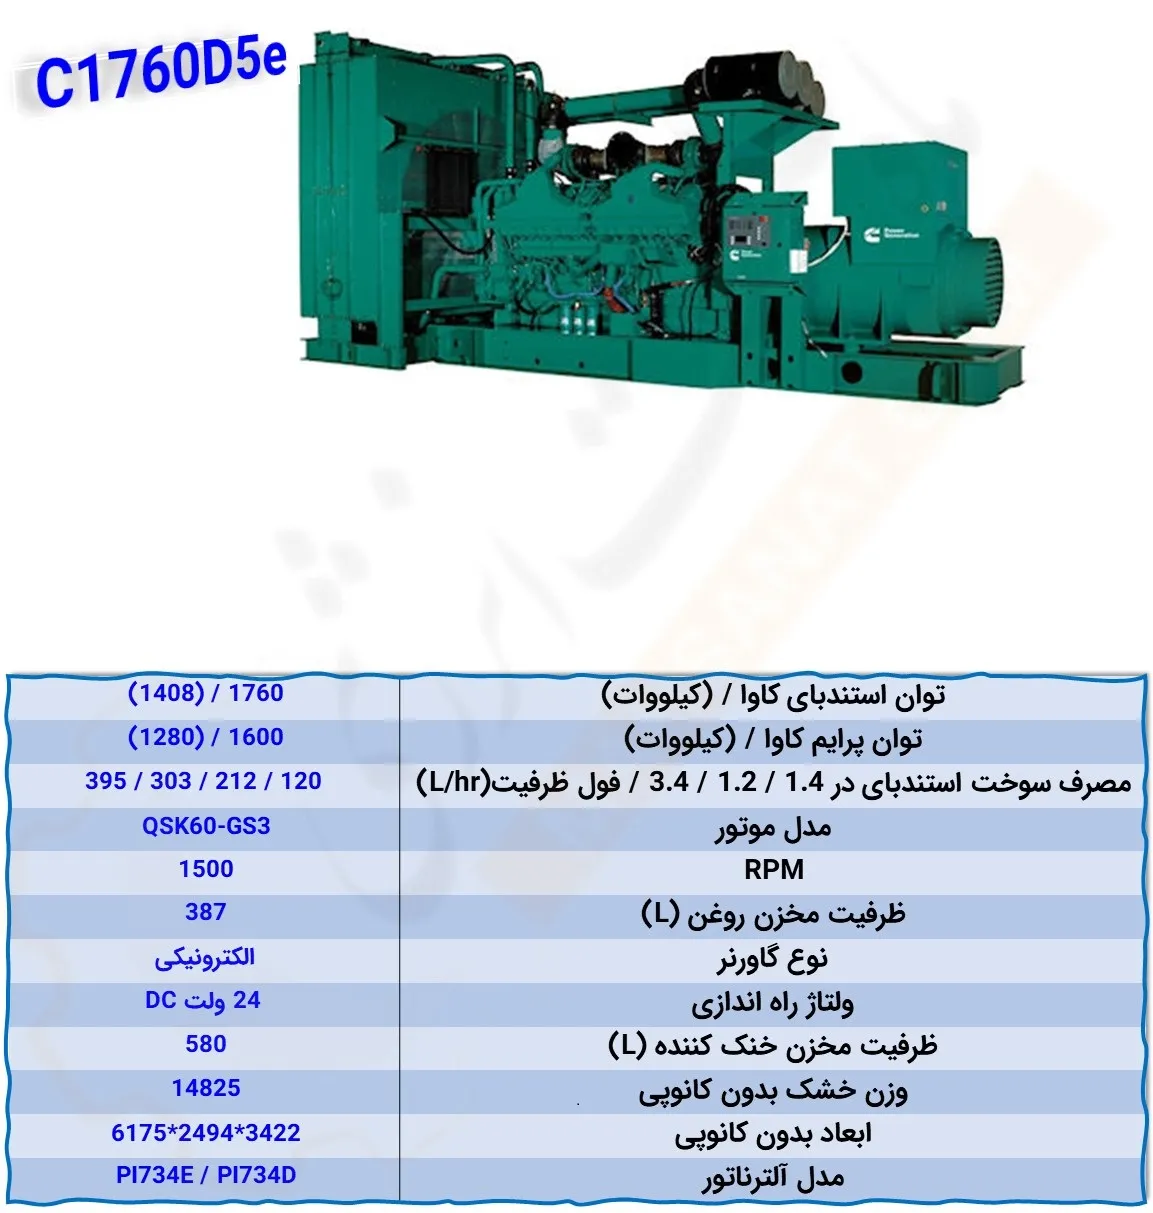 C1760D5e - ماه صنعت انرژی